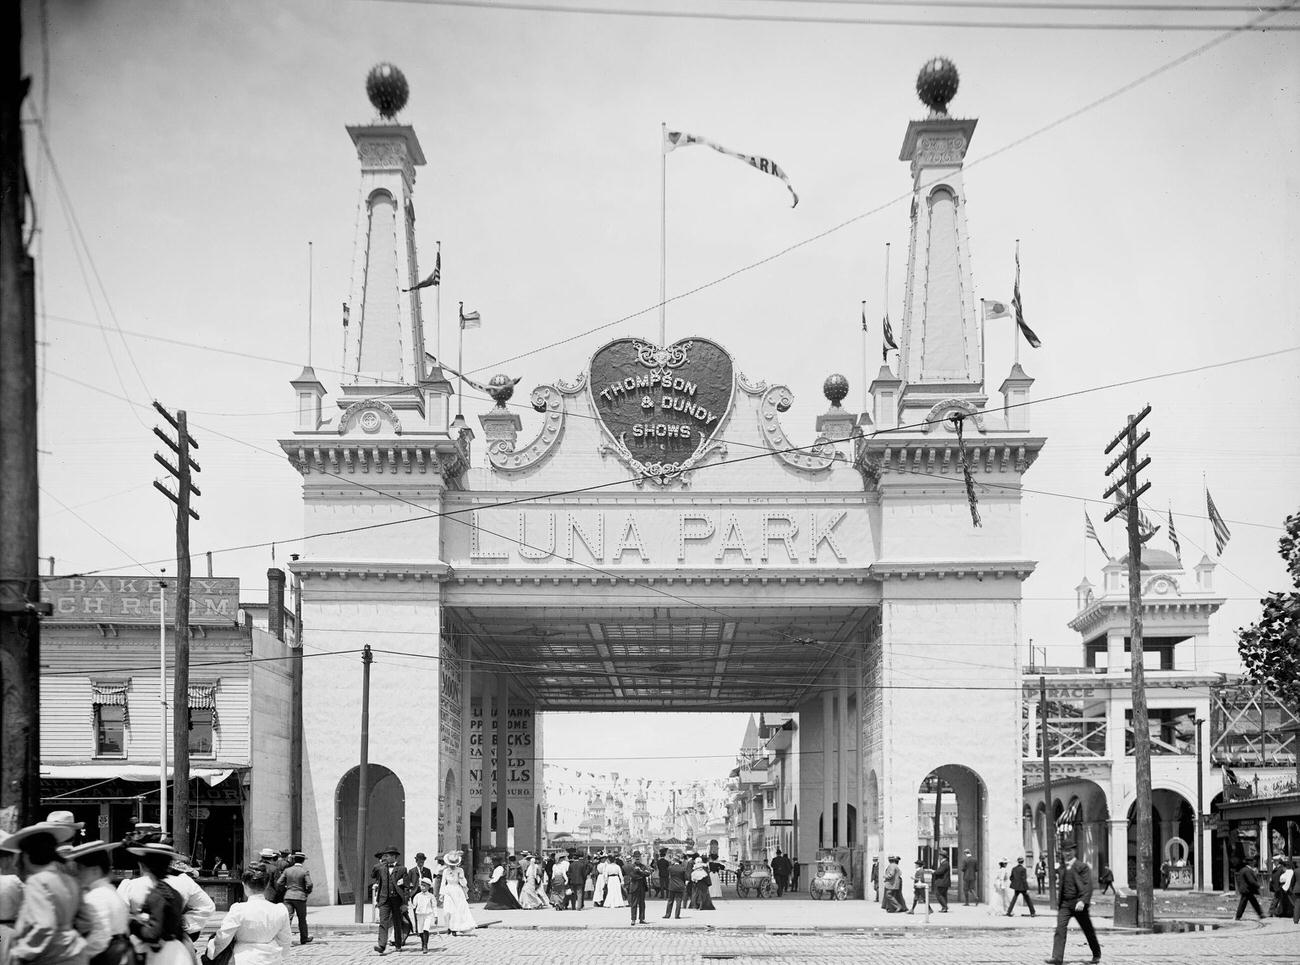 Entrance To Luna Park In Coney Island, Circa 1905